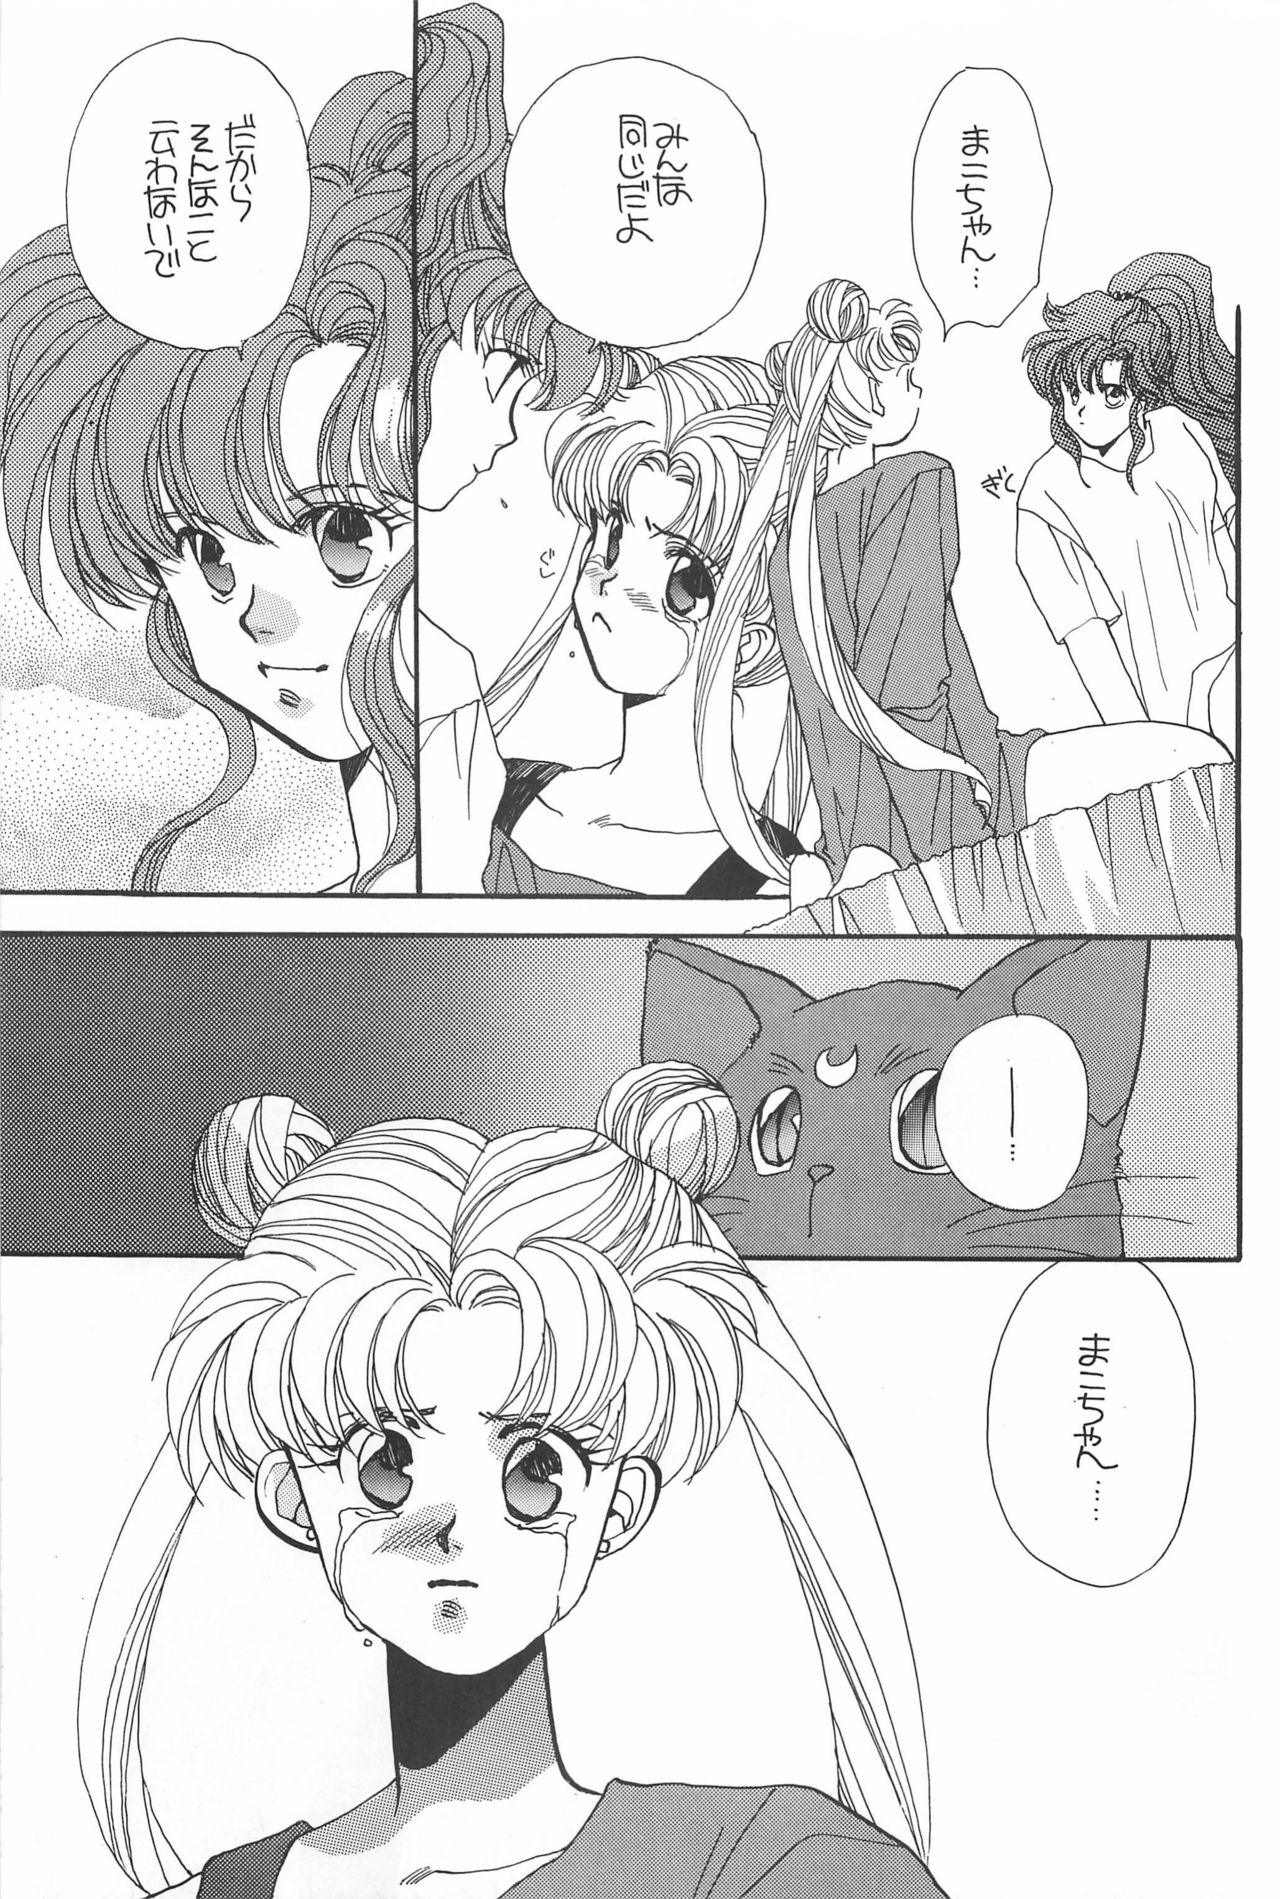 [Hello World (Muttri Moony)] Kaze no You ni Yume no You ni - Sailor Moon Collection (Sailor Moon) 162